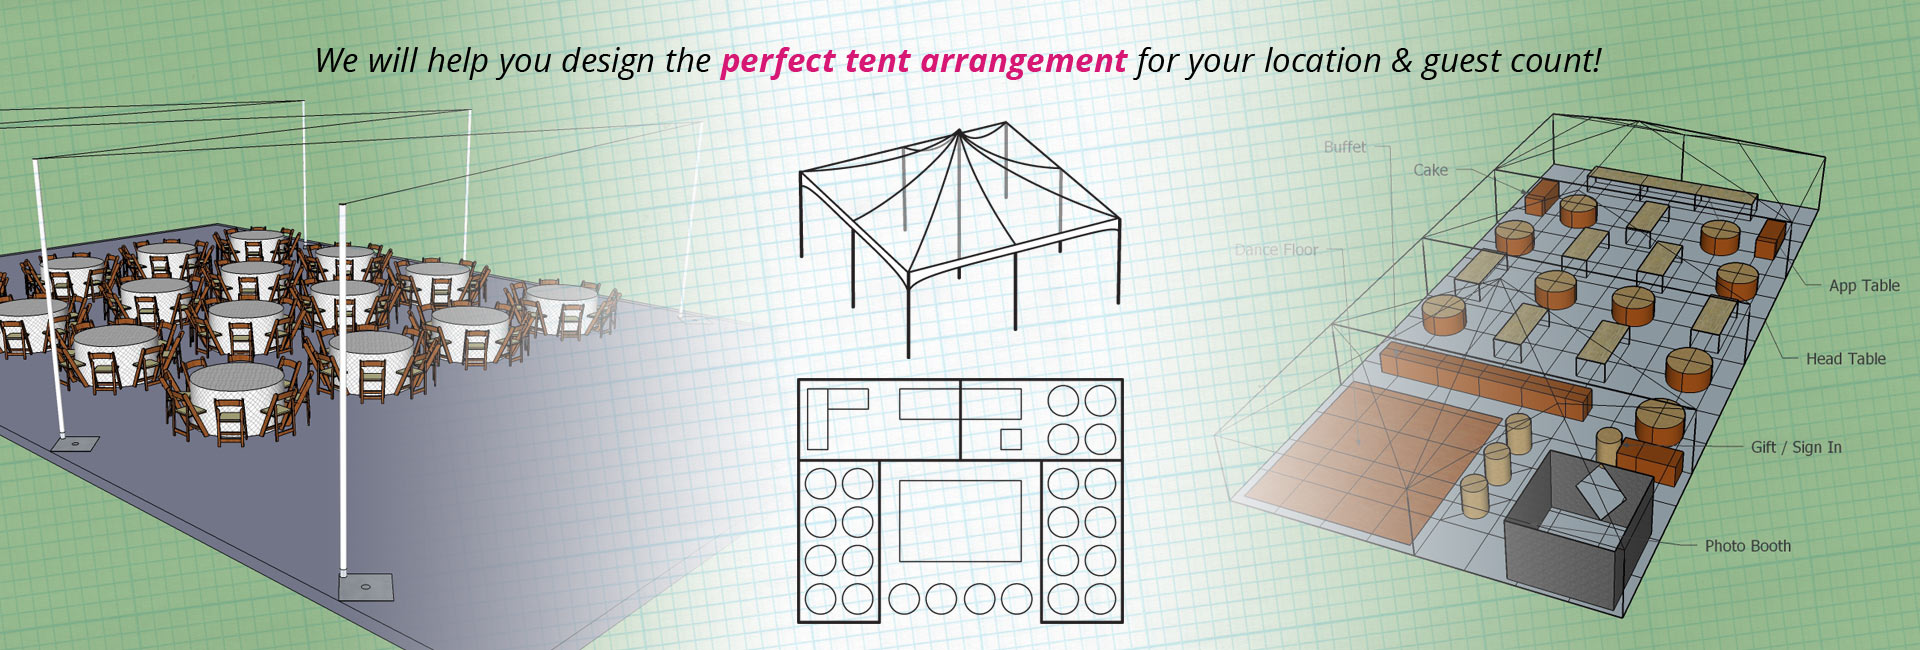 rental tent setup options